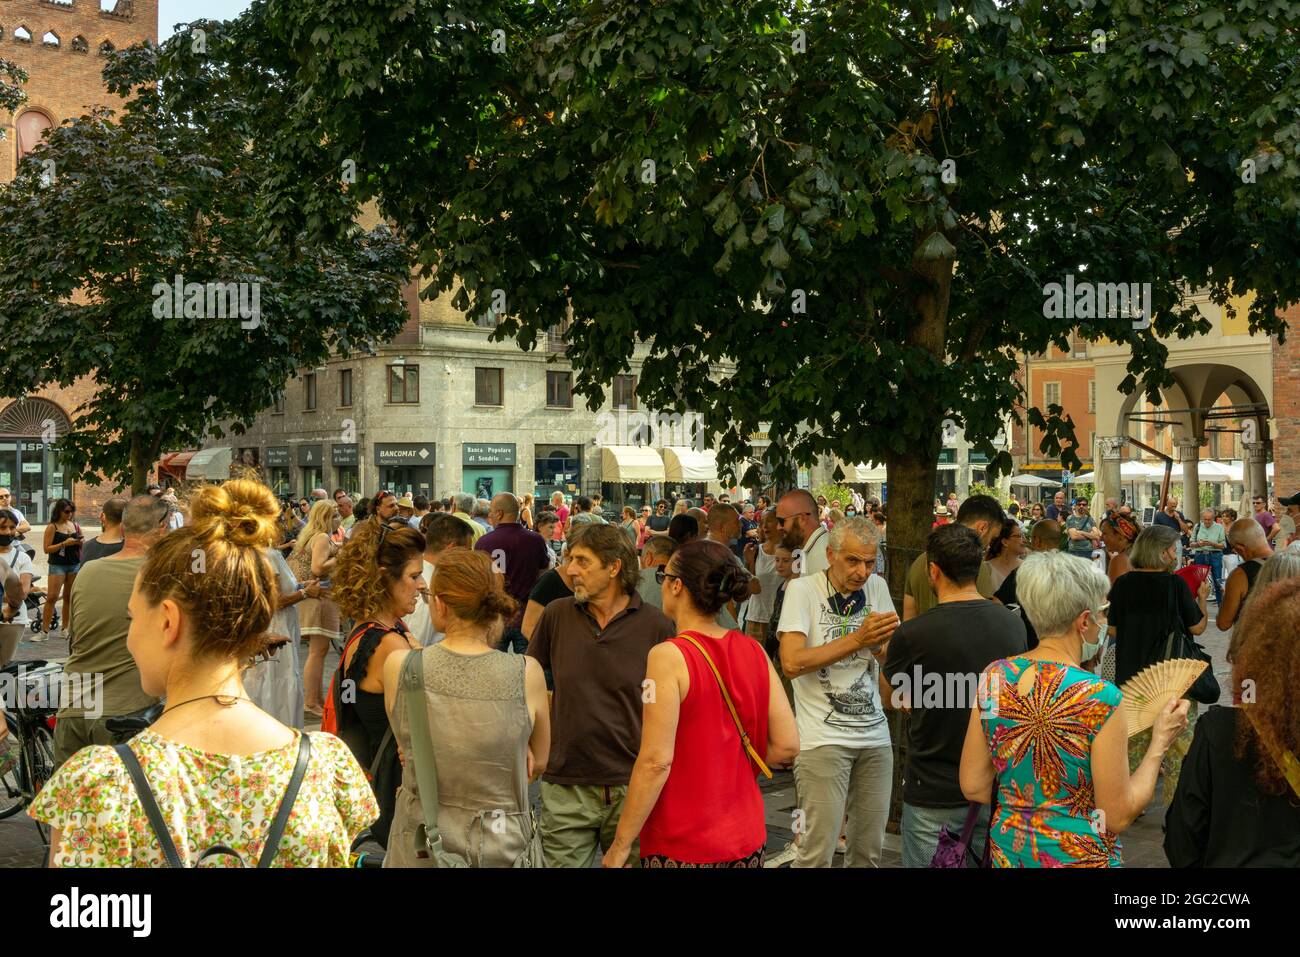 CREMON, ITALIE - 24 juillet 2021 : une foule de personnes protestant contre la vaccination Covid-19 à Cremona, Italie Banque D'Images